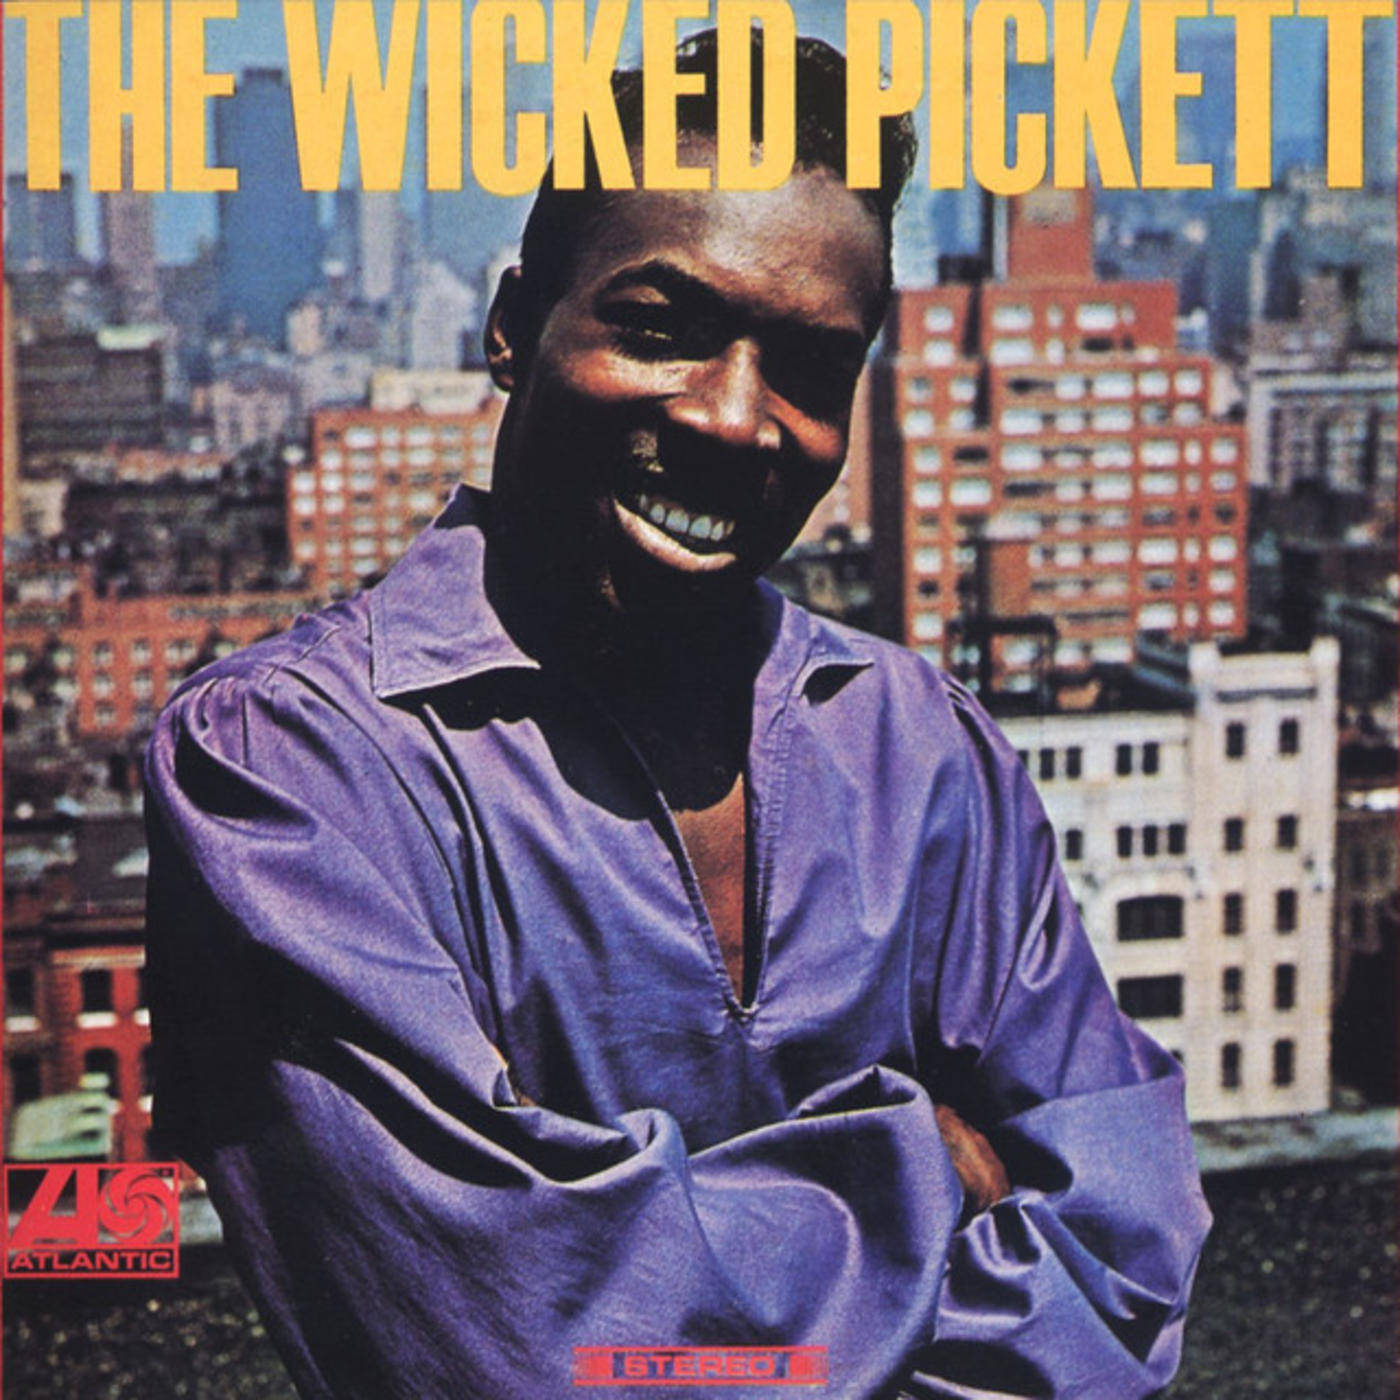 American Soul Singer Wilson Pickett The Wicked Pickett Wallpaper